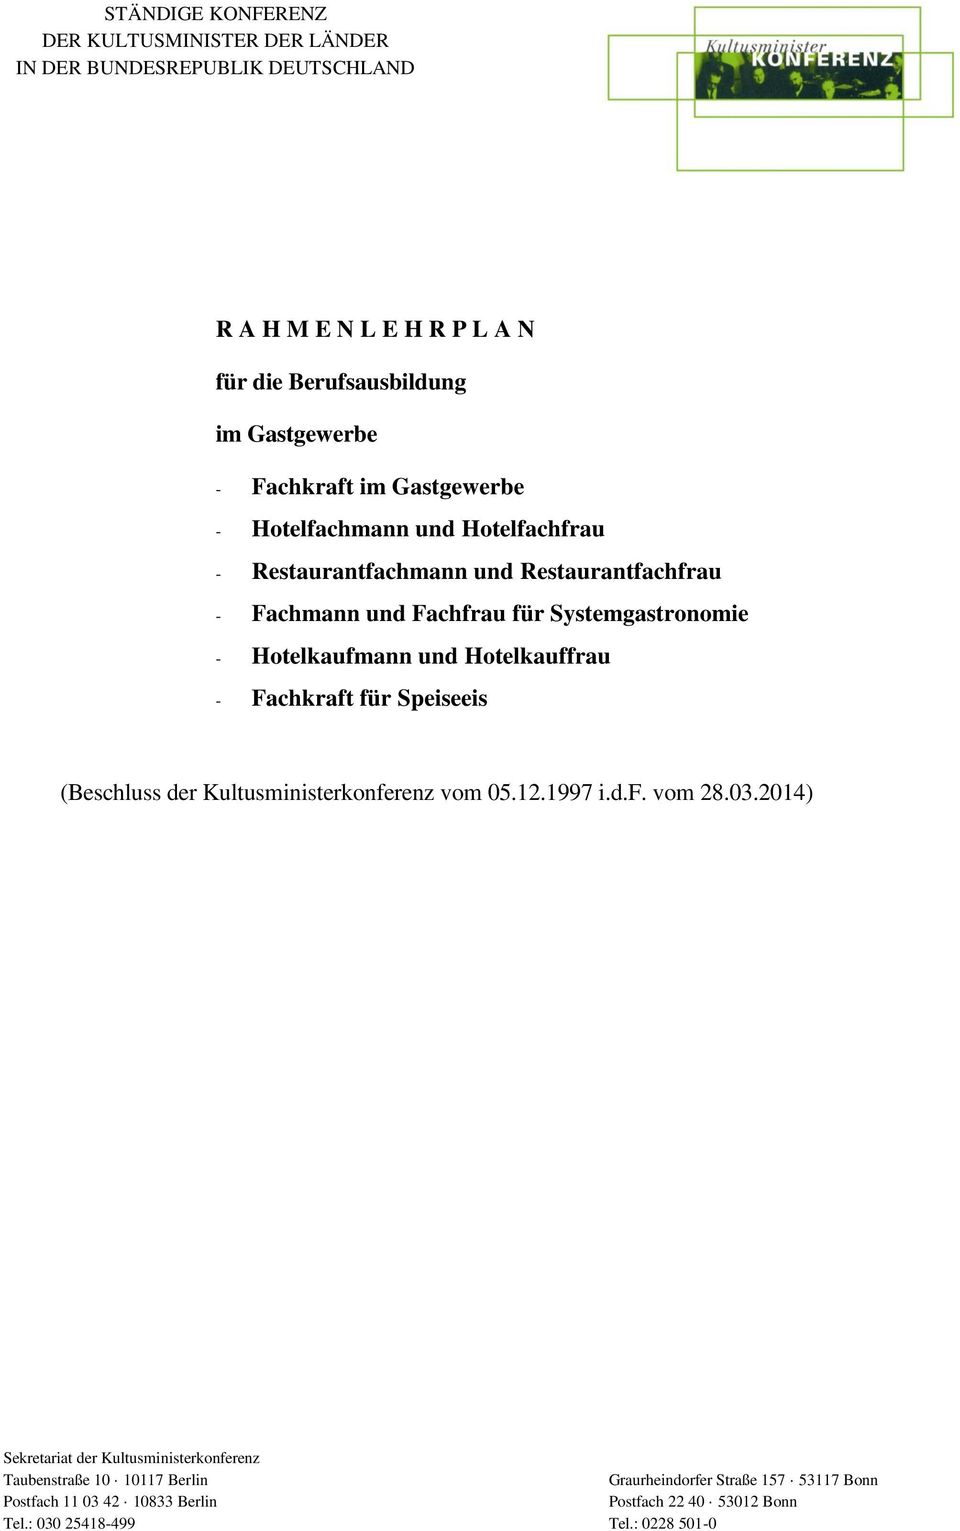 Hotelkaufmann und Hotelkauffrau - Fachkraft für Speiseeis (Beschluss der Kultusministerkonferenz vom 05.12.1997 i.d.f. vom 28.03.